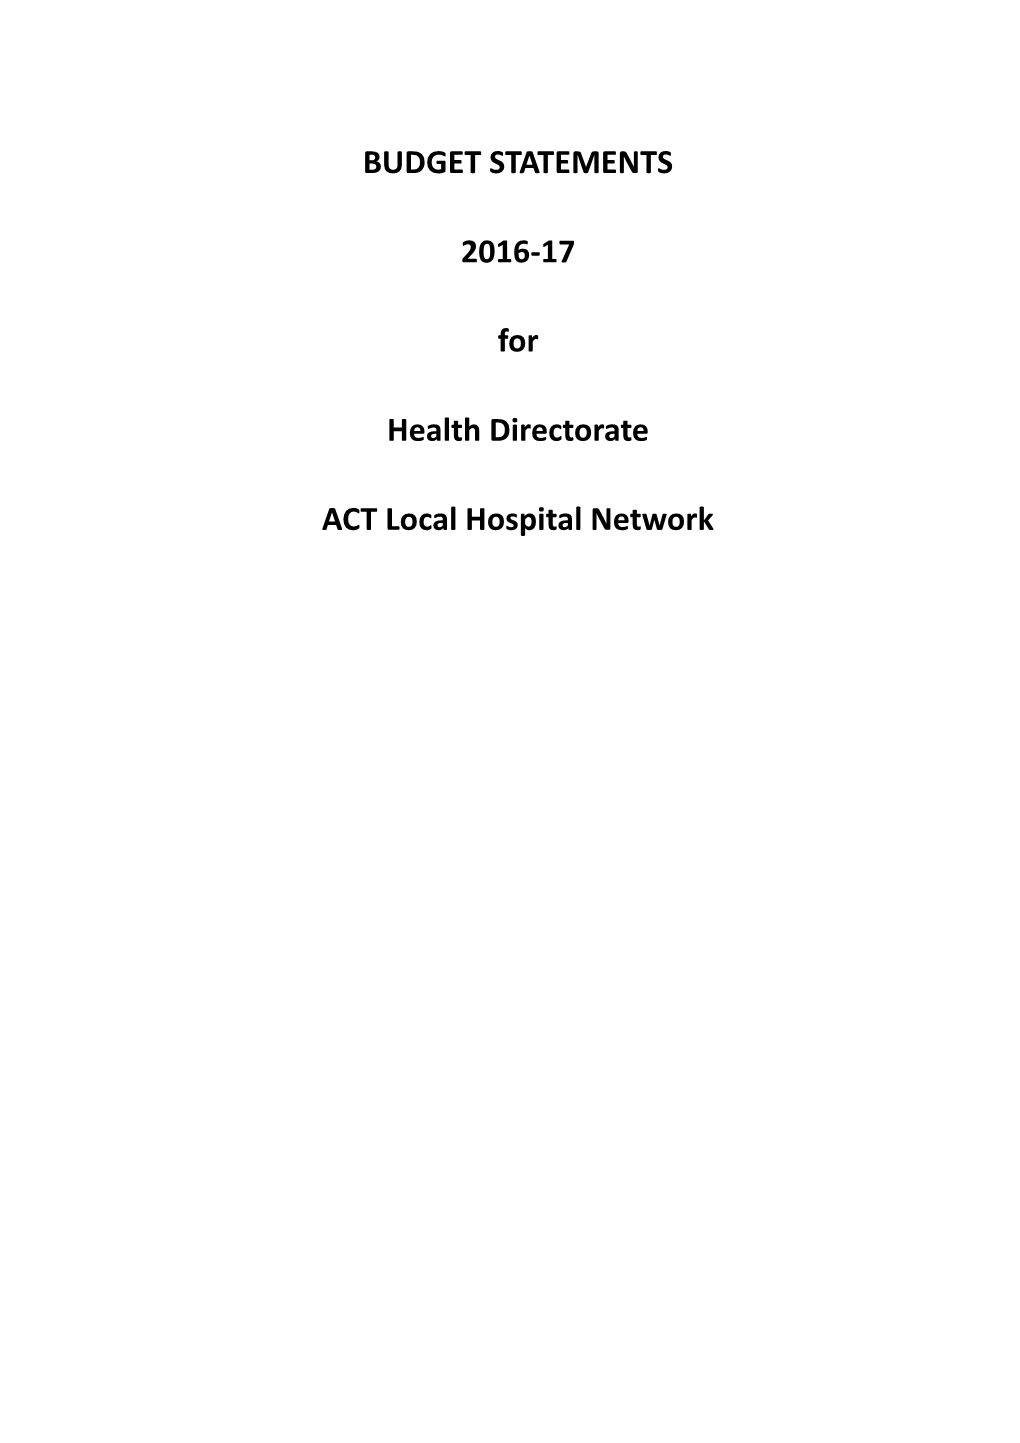 2016-17 Health Directorate Budget Statement